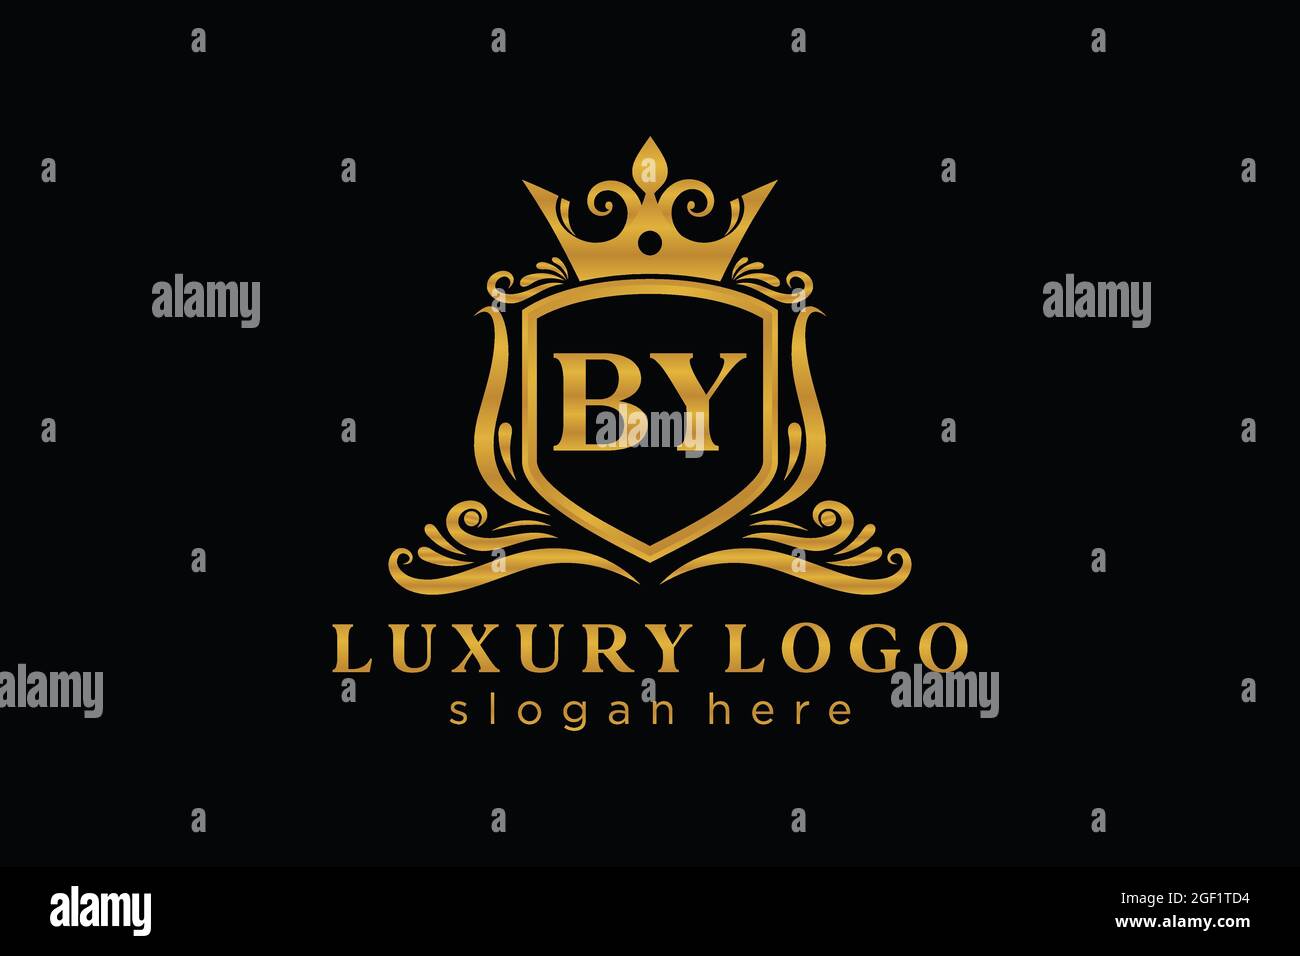 MIT dem Buchstaben Royal Luxury Logo Vorlage in Vektorgrafik für Restaurant, Royalty, Boutique, Cafe, Hotel, Heraldisch, Schmuck, Mode und andere Vektor illustrr Stock Vektor